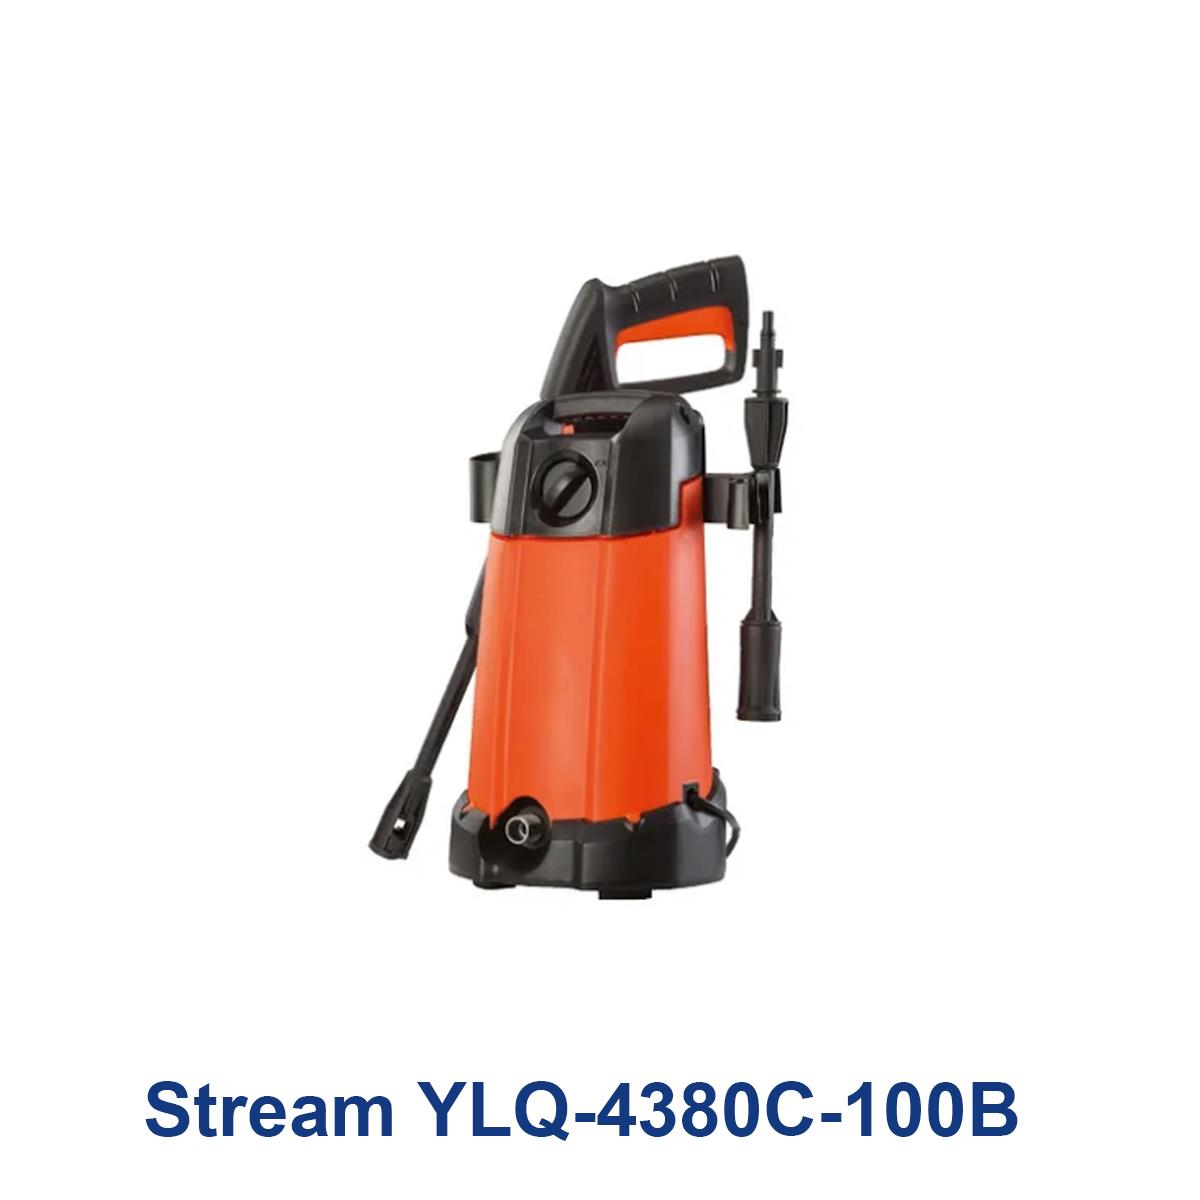 Stream-YLQ-4380C-100B